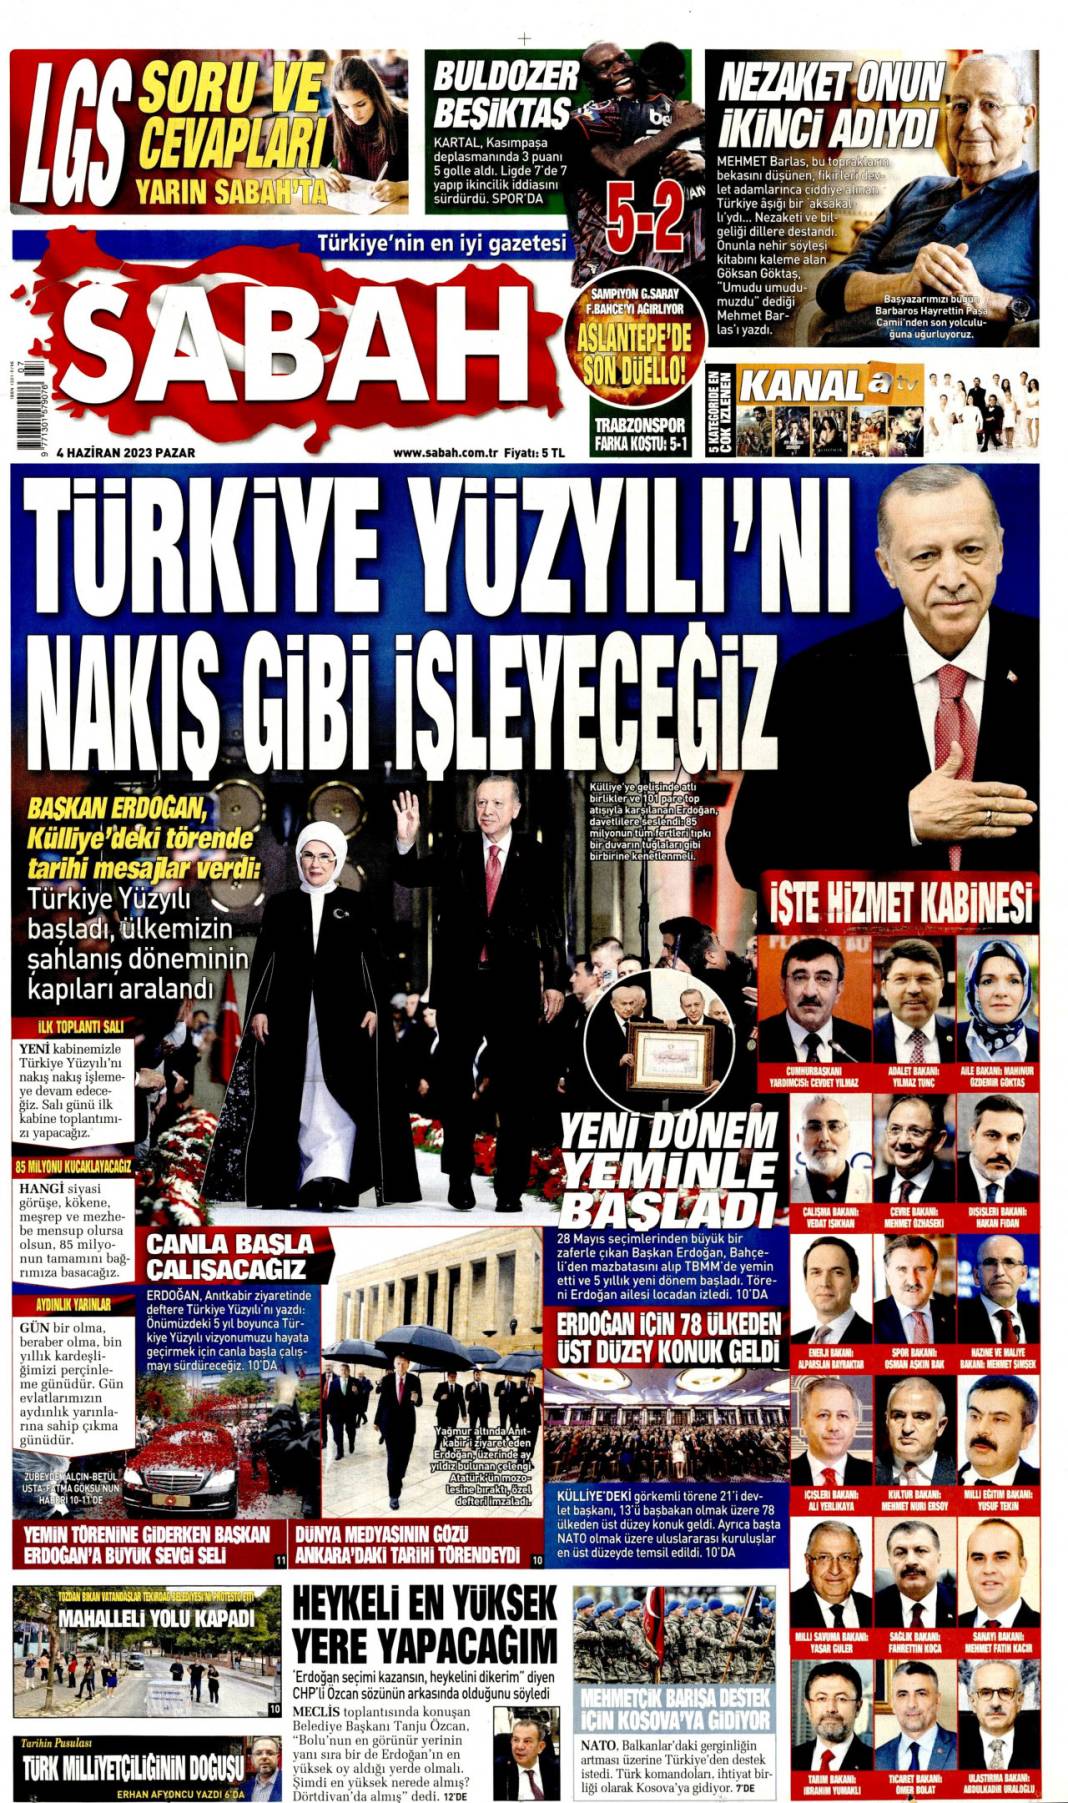 Gazeteler, Erdoğan’ın açıkladığı yeni kabine listesini manşetlerine nasıl taşıdı? İşte günün manşetleri 14